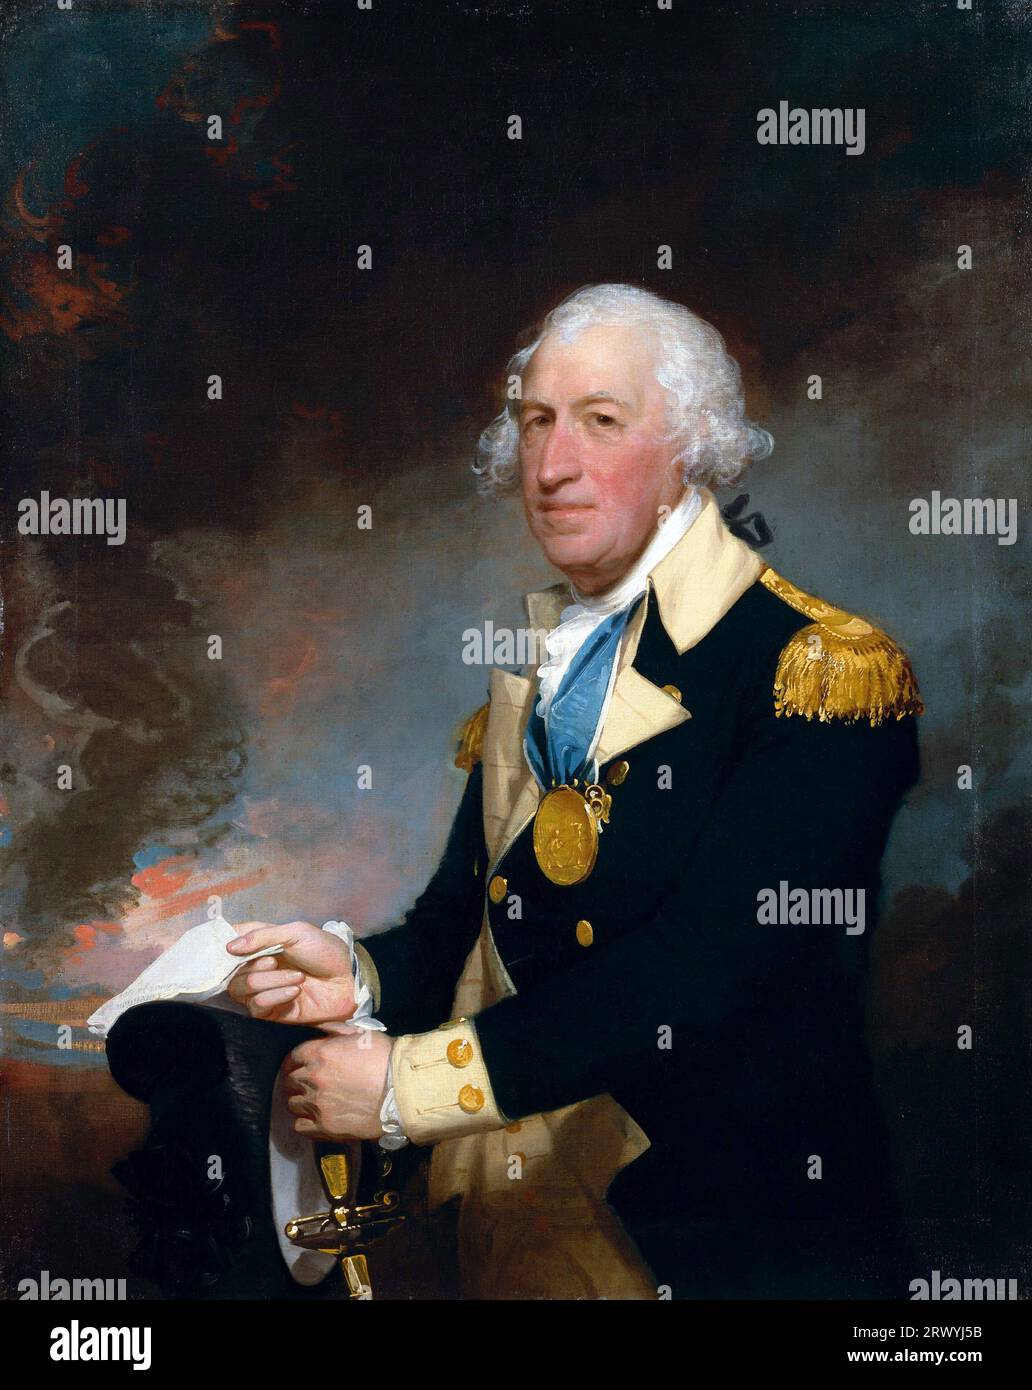 Horatio Lloyd Gates (1727 – 1806) ufficiale dell'esercito britannico che prestò servizio come generale nell'Esercito continentale durante i primi anni della guerra di indipendenza americana. Dipinto di Gilbert Stuart Foto Stock